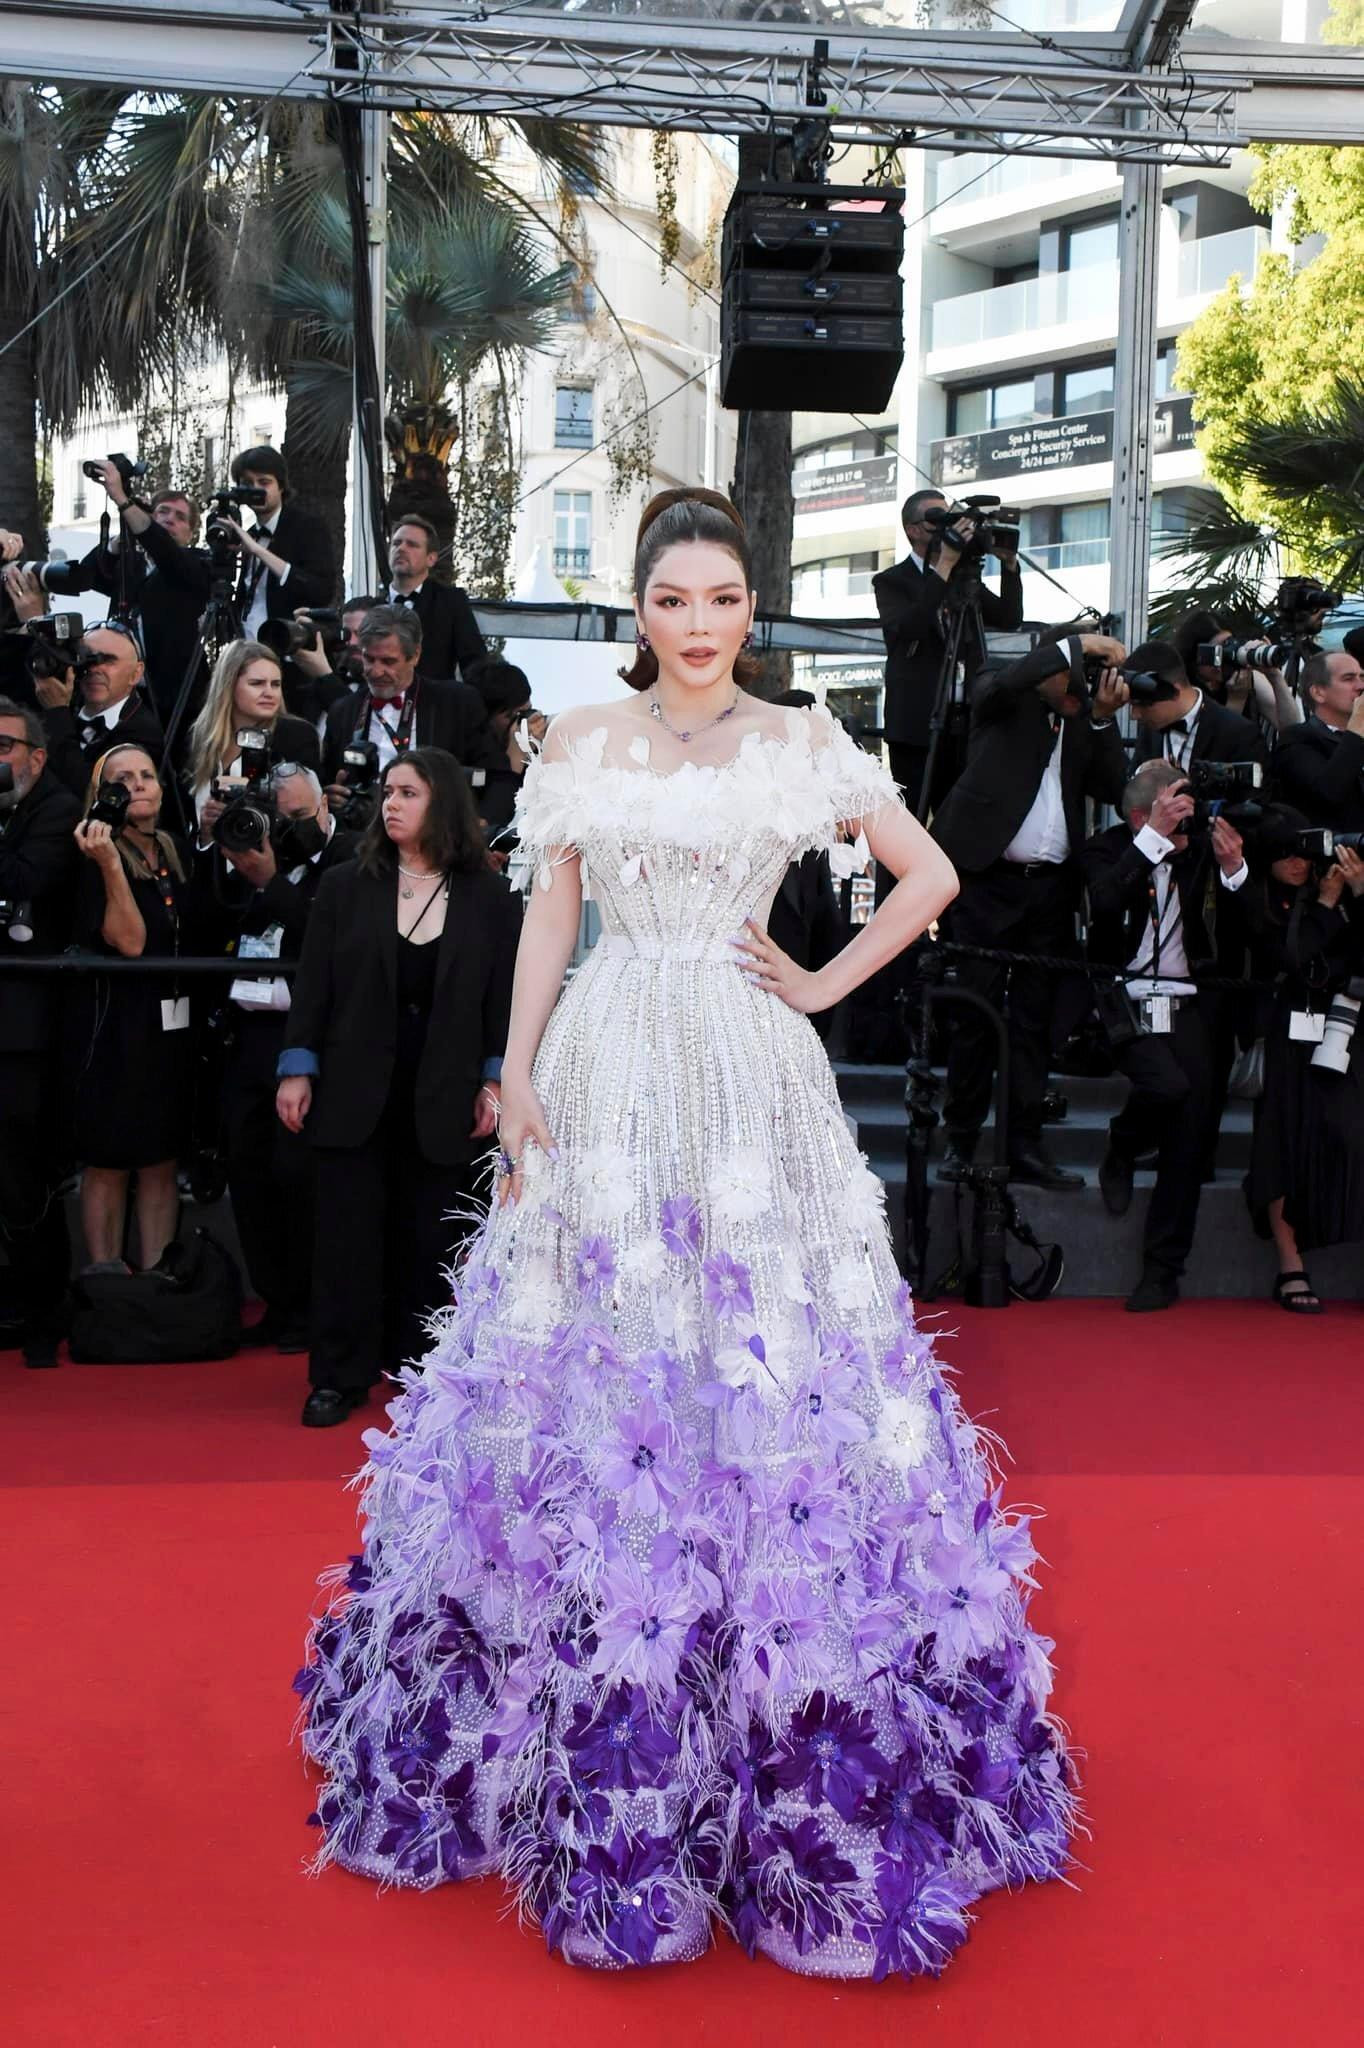 Lý Nhã Kỳ đeo trang sức gần 2,5 tỷ đồng trên thảm đỏ Cannes - 2